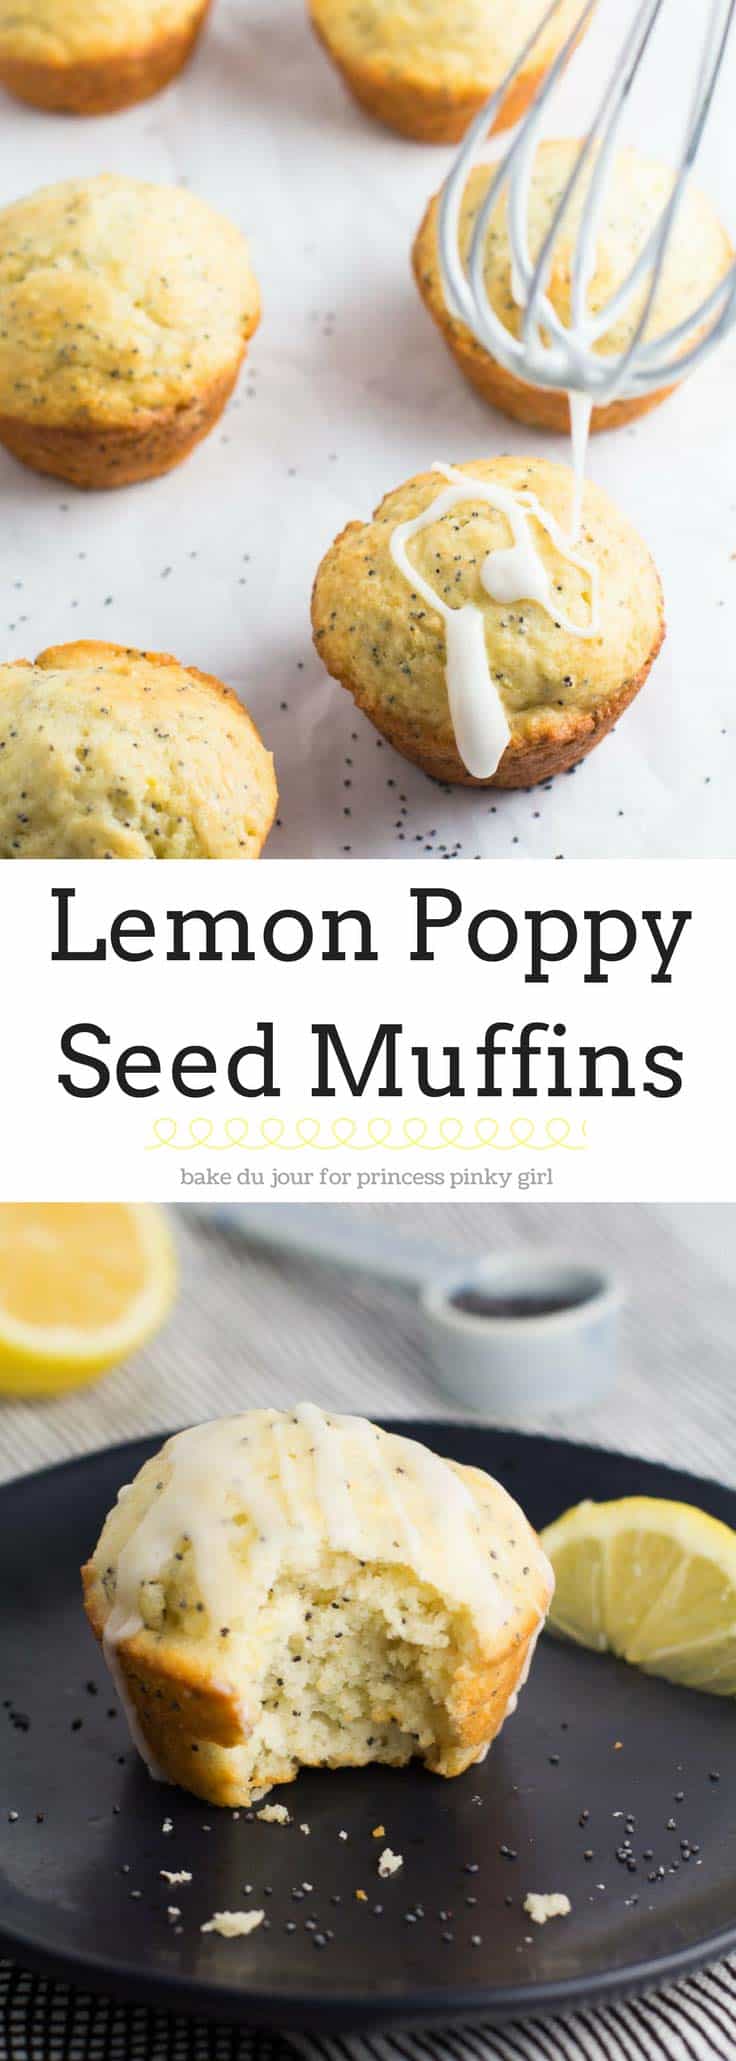 Pinterest image of lemon poppyseed muffins